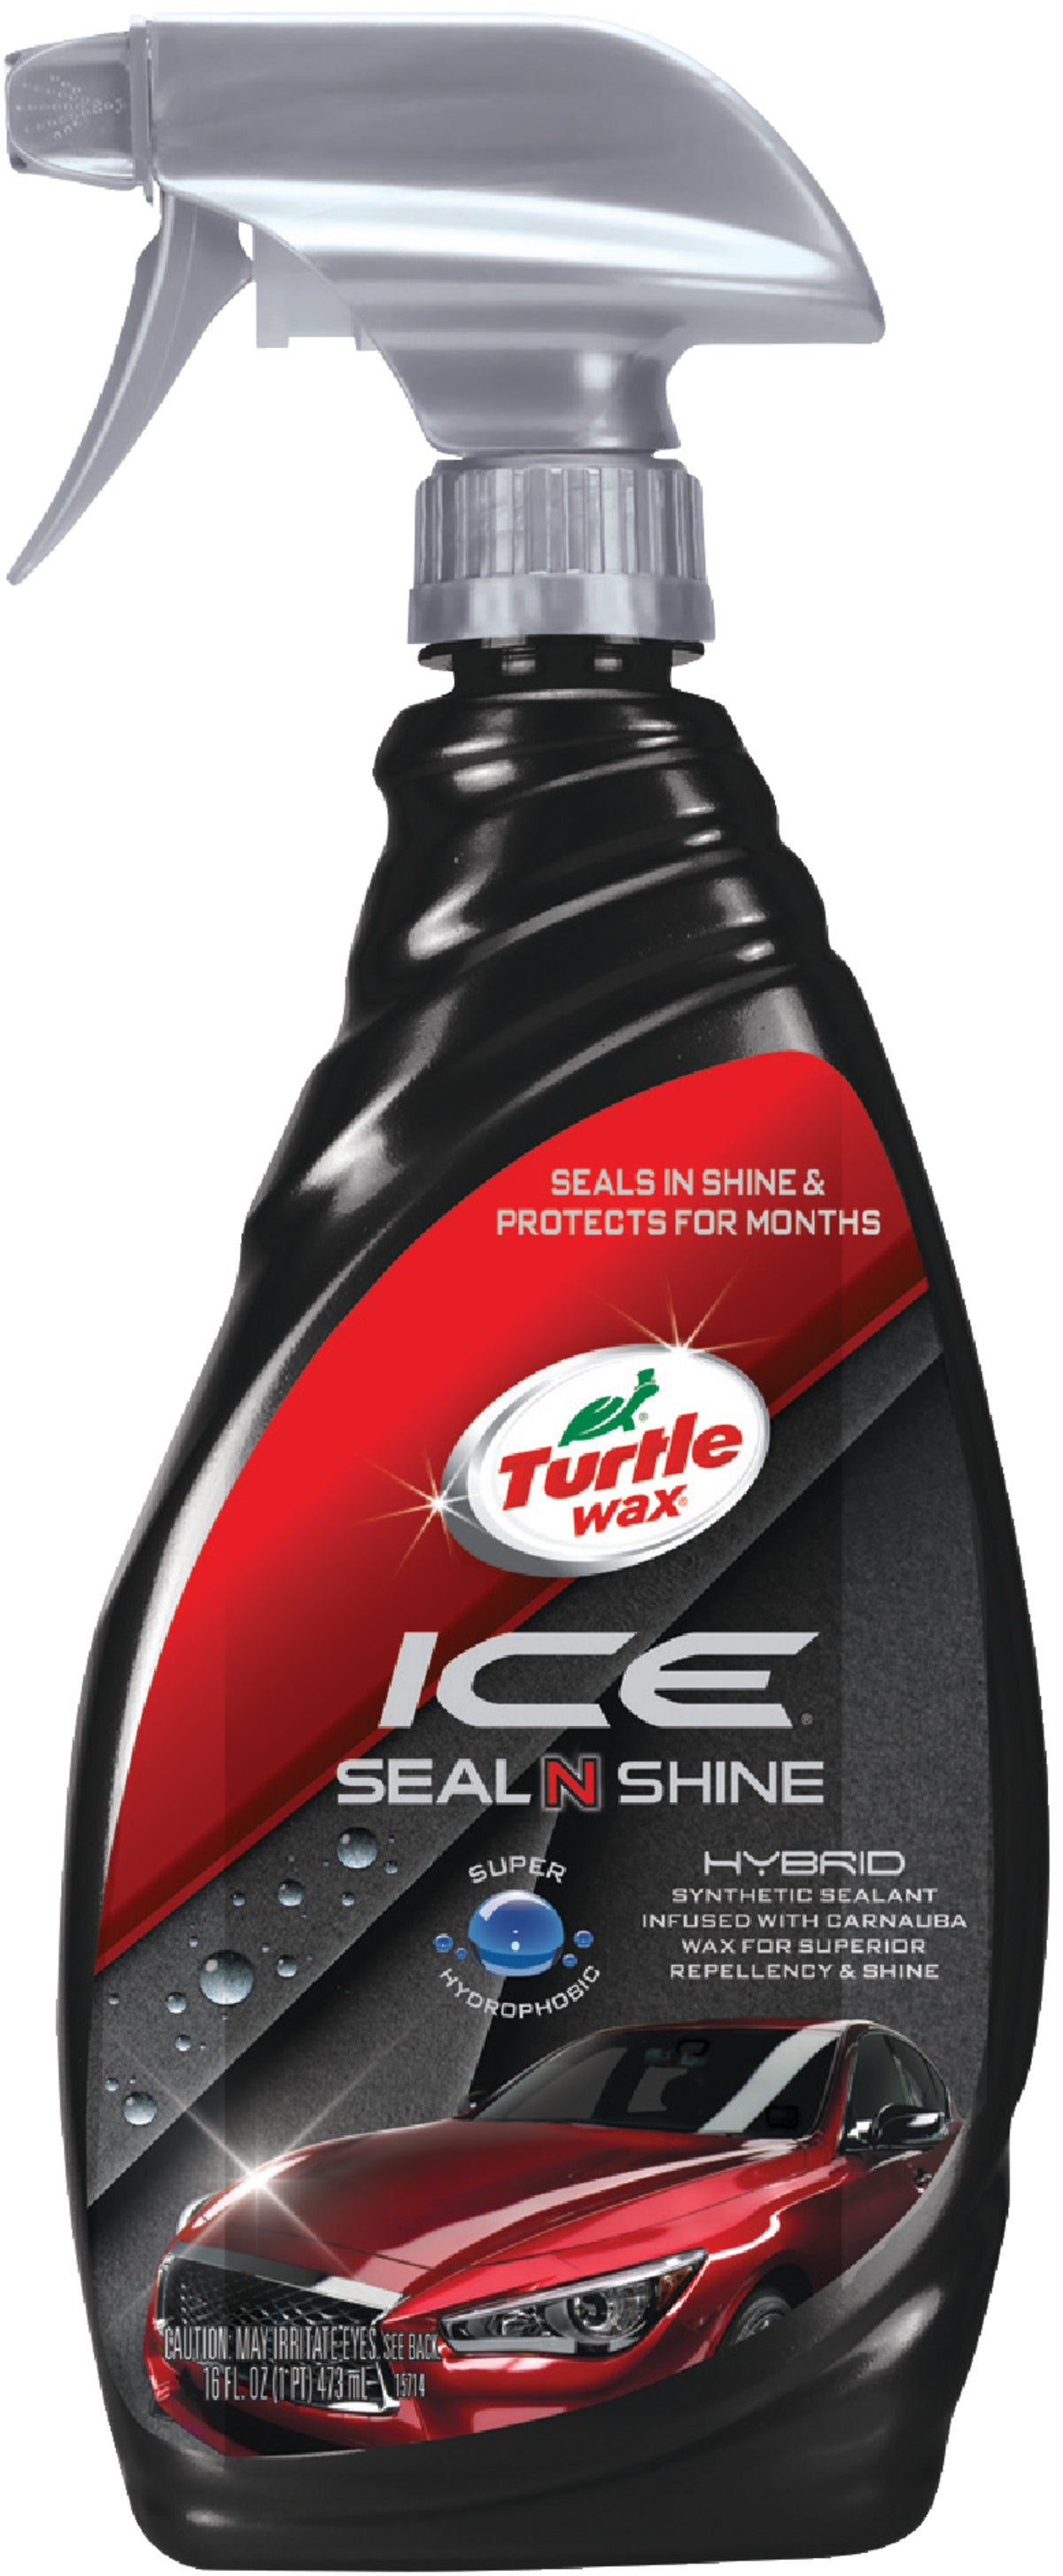 Turtle Wax Ice Sealant, Hybrid, Seal N Shine - 16 fl oz